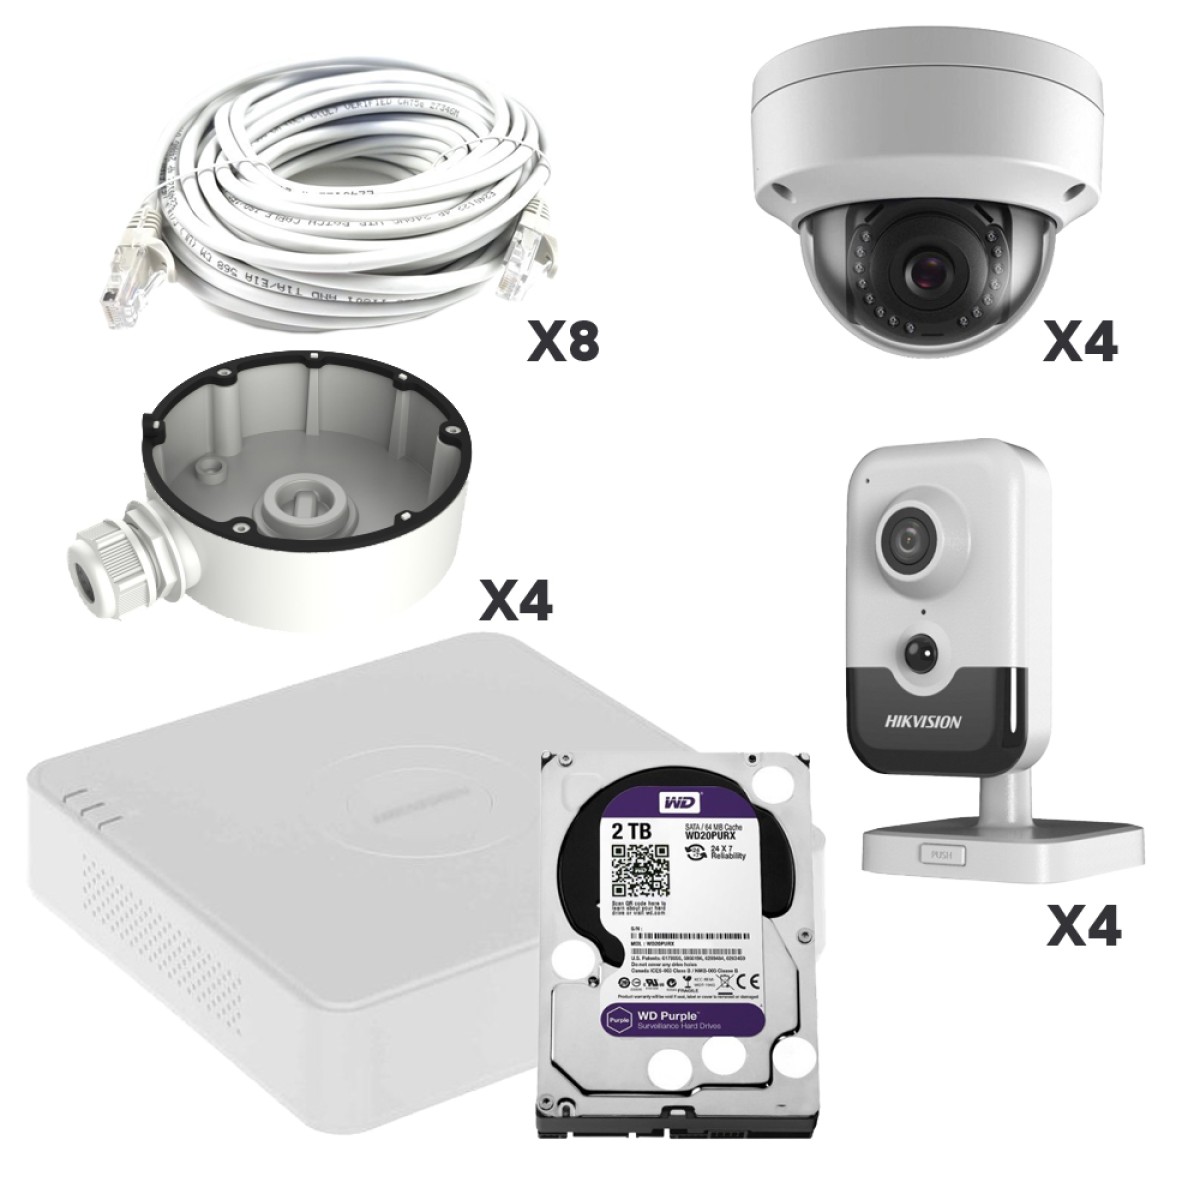 Комплект видеонаблюдения для офиса на 8 камер с возможностью записи на 4 камерах 256_256.jpg